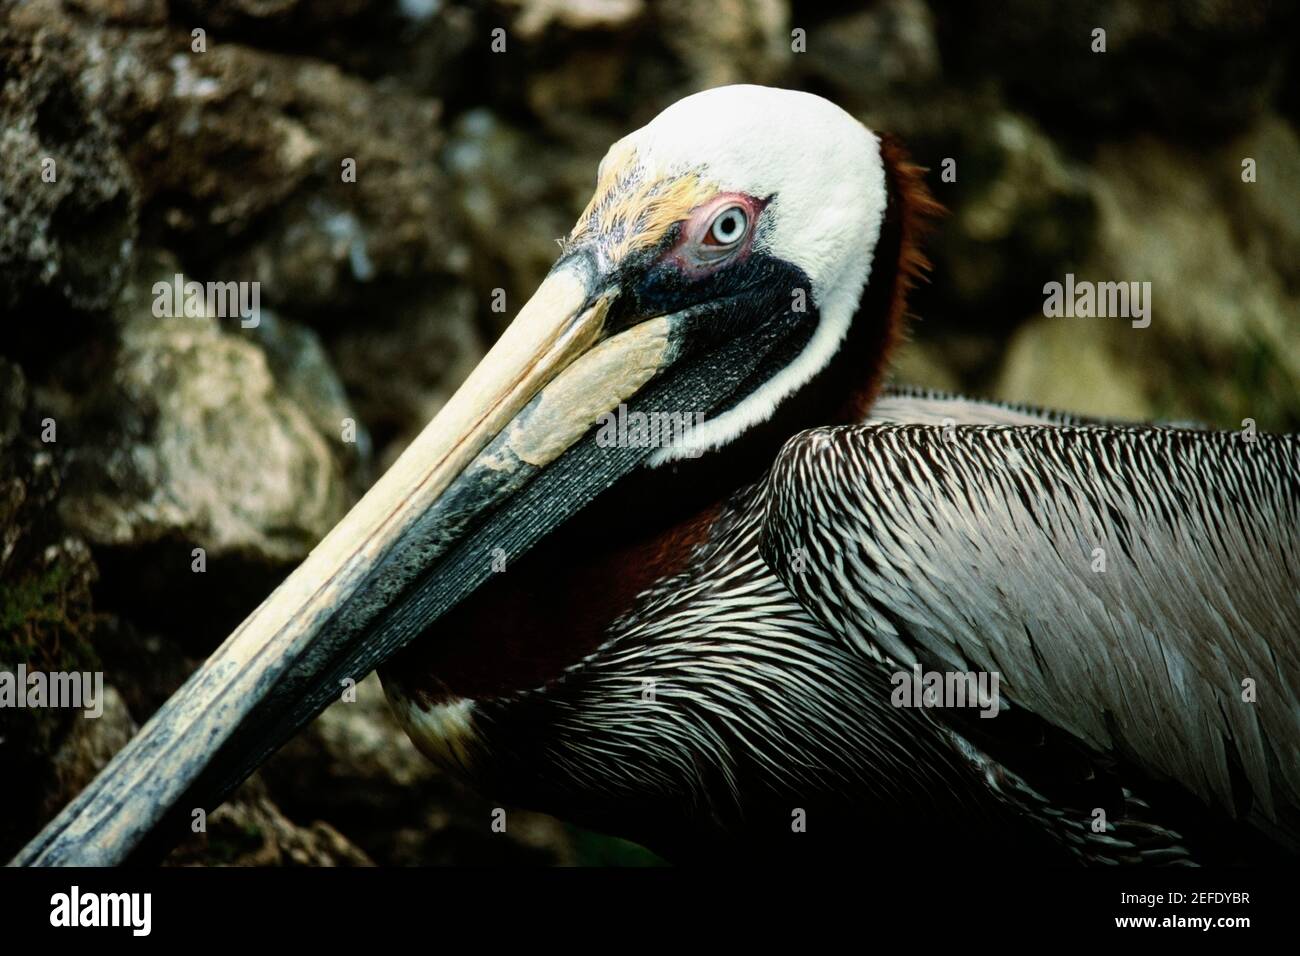 Vue latérale d'un oiseau avec un bec allongé, Barbade Banque D'Images